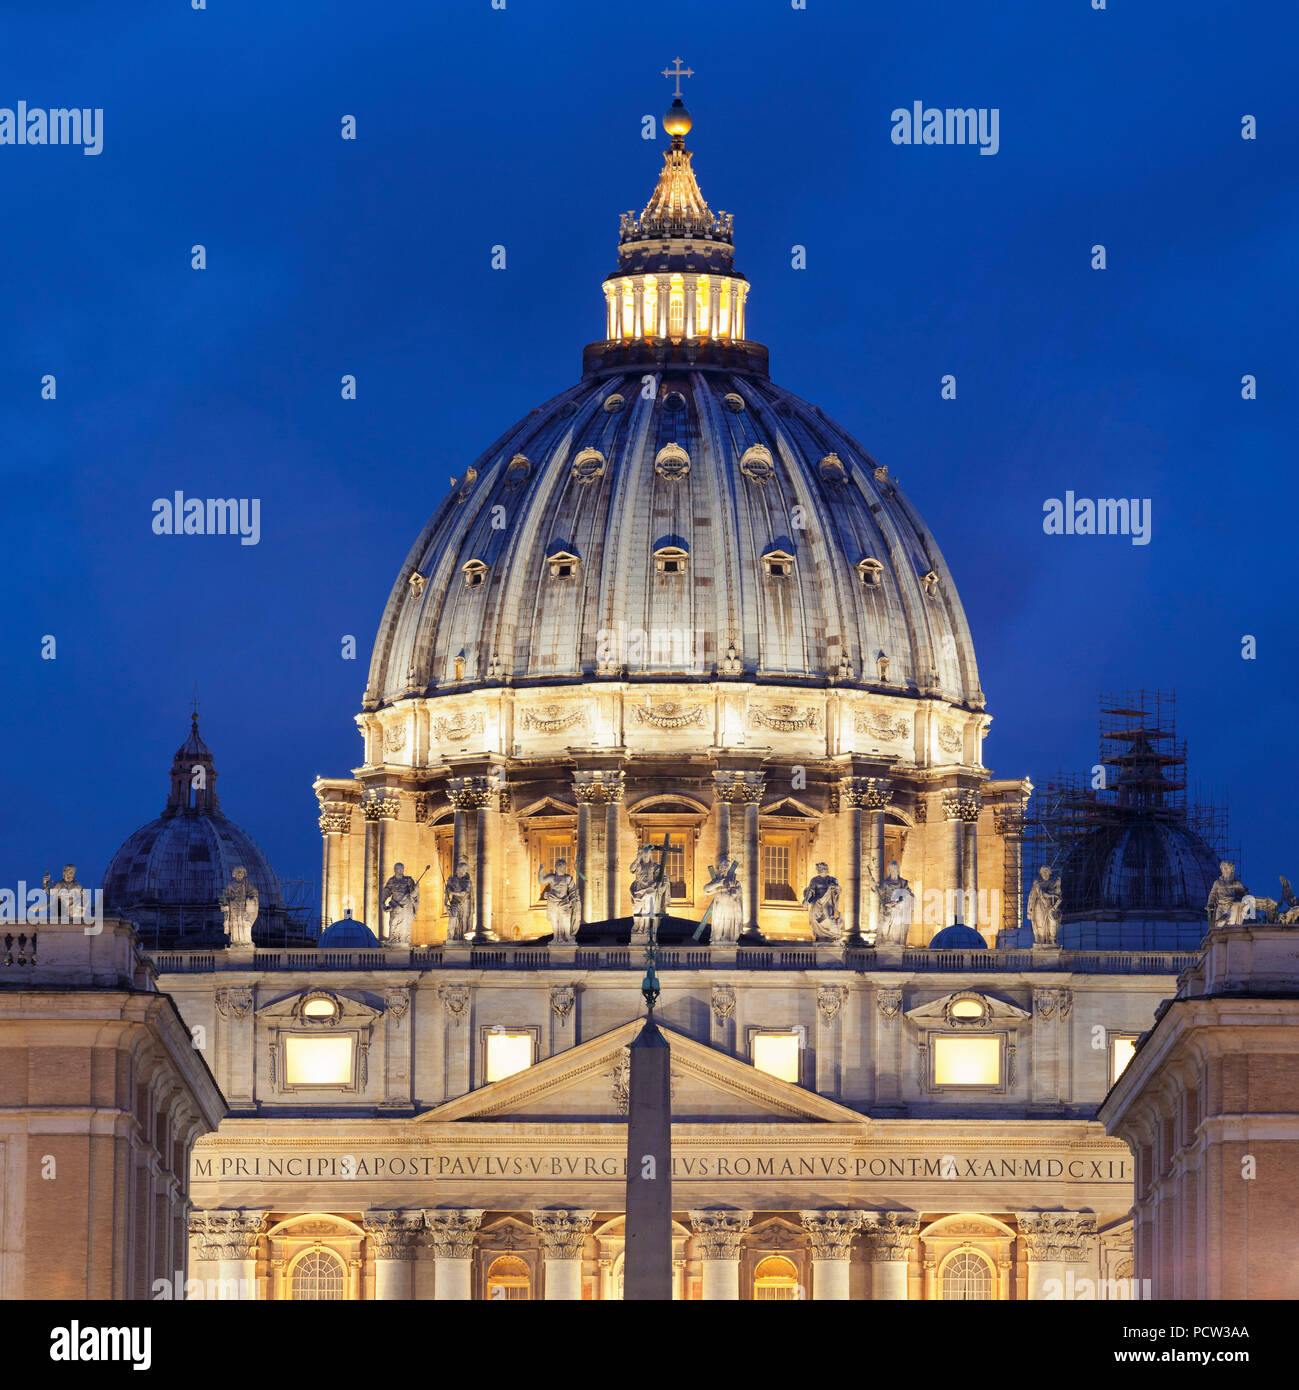 St. Peter's Basilica, Basilica di San Pietro, Rome, Lazio, Italy Stock Photo